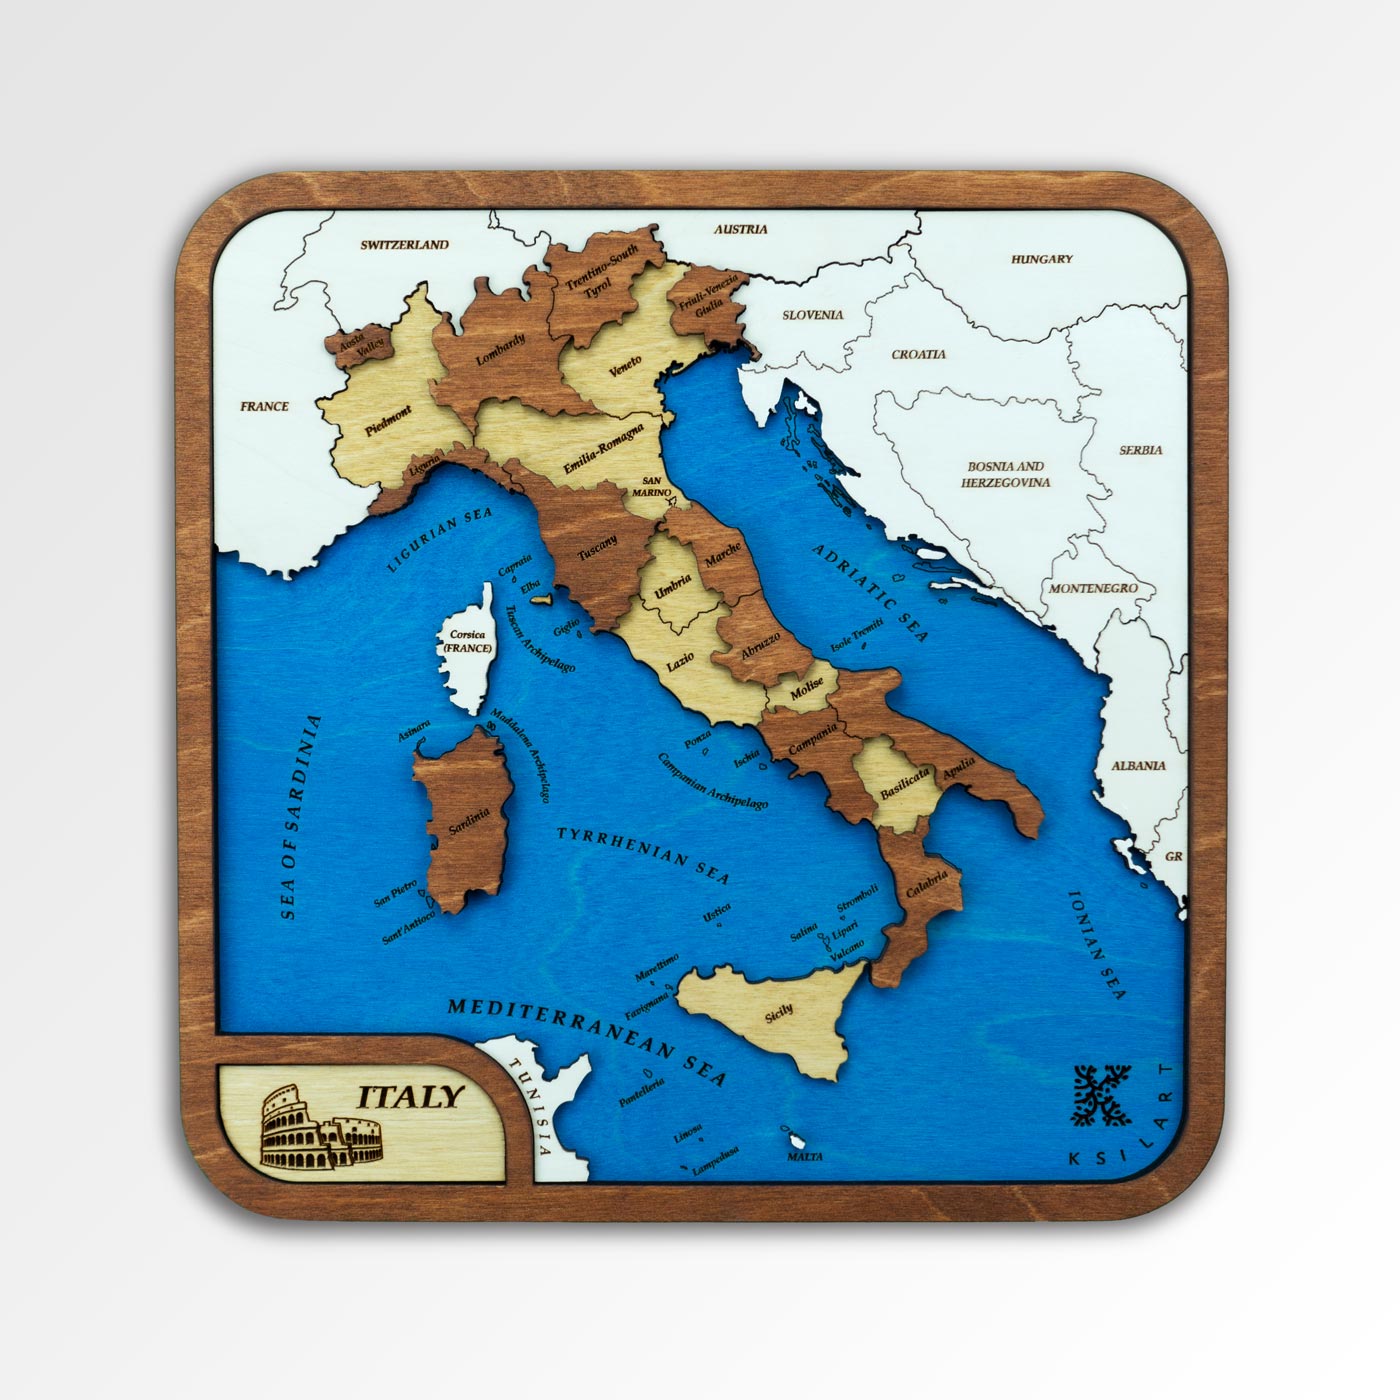 Ξύλινος μίνι χάρτης της Ιταλίας σε καφέ χρώμα. Ξύλινοι μίνι χάρτες χωρών από την Ksilart